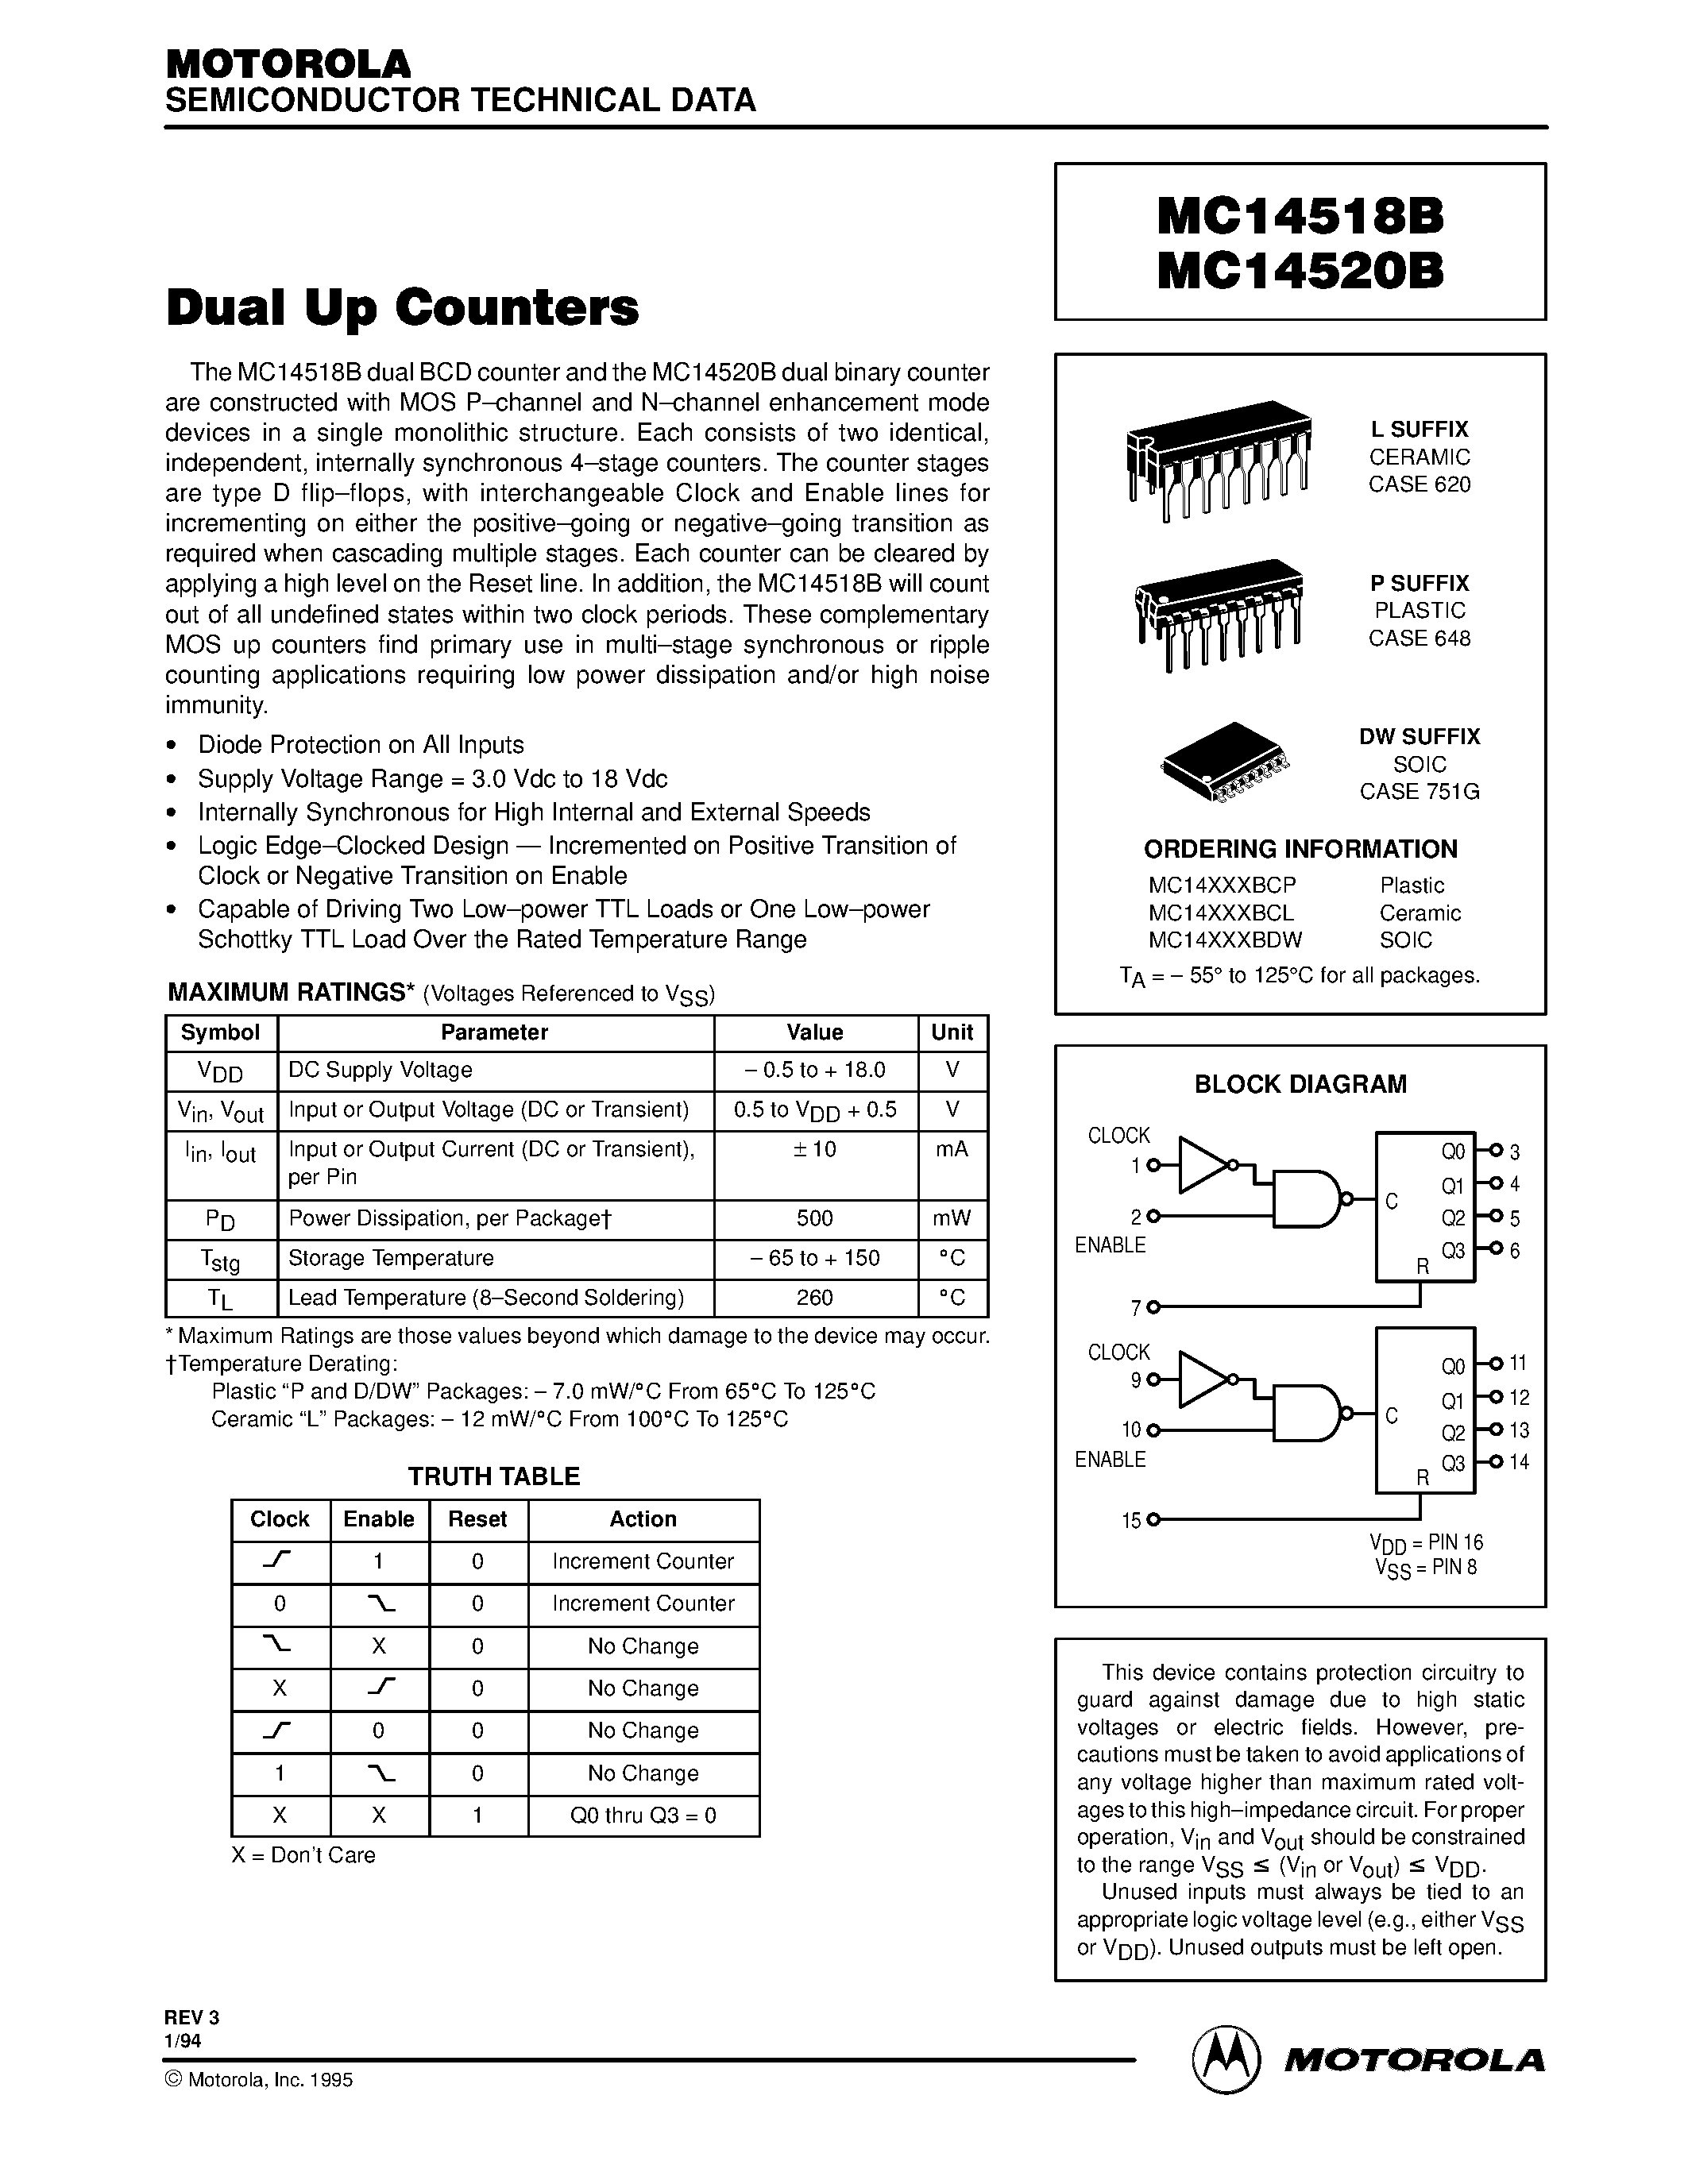 Datasheet MC14518B - (MC14518B / MC14520B) DUAL UP COUNTERS page 1